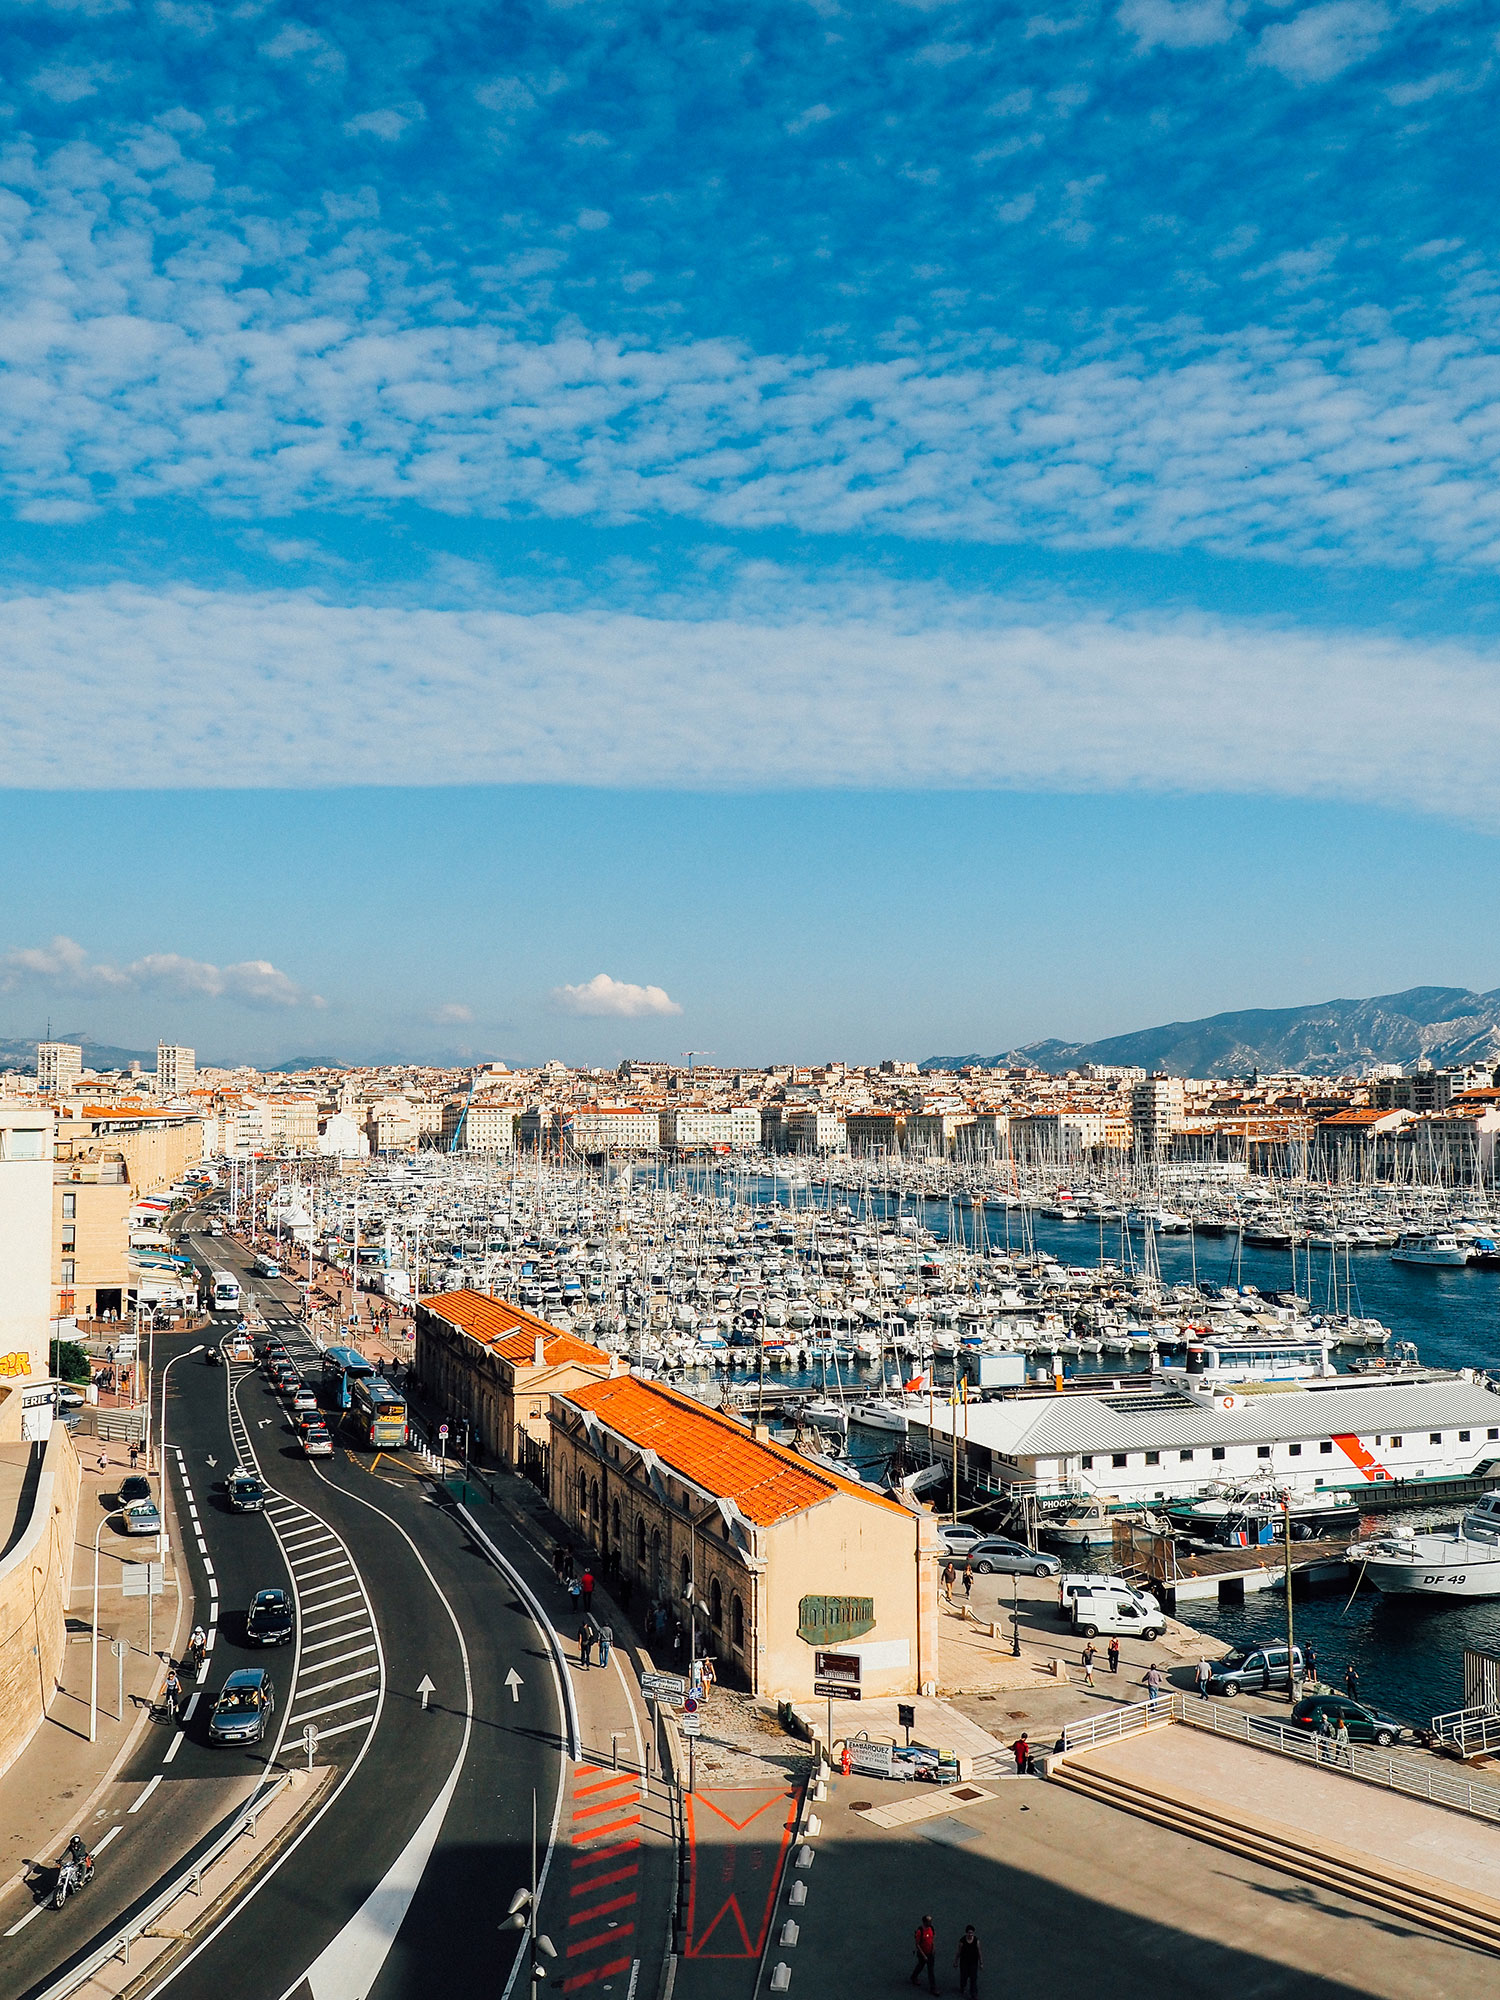 vieux port week end Marseille que voir que faire bonnes adresses blog voyage Lili in Wonderland